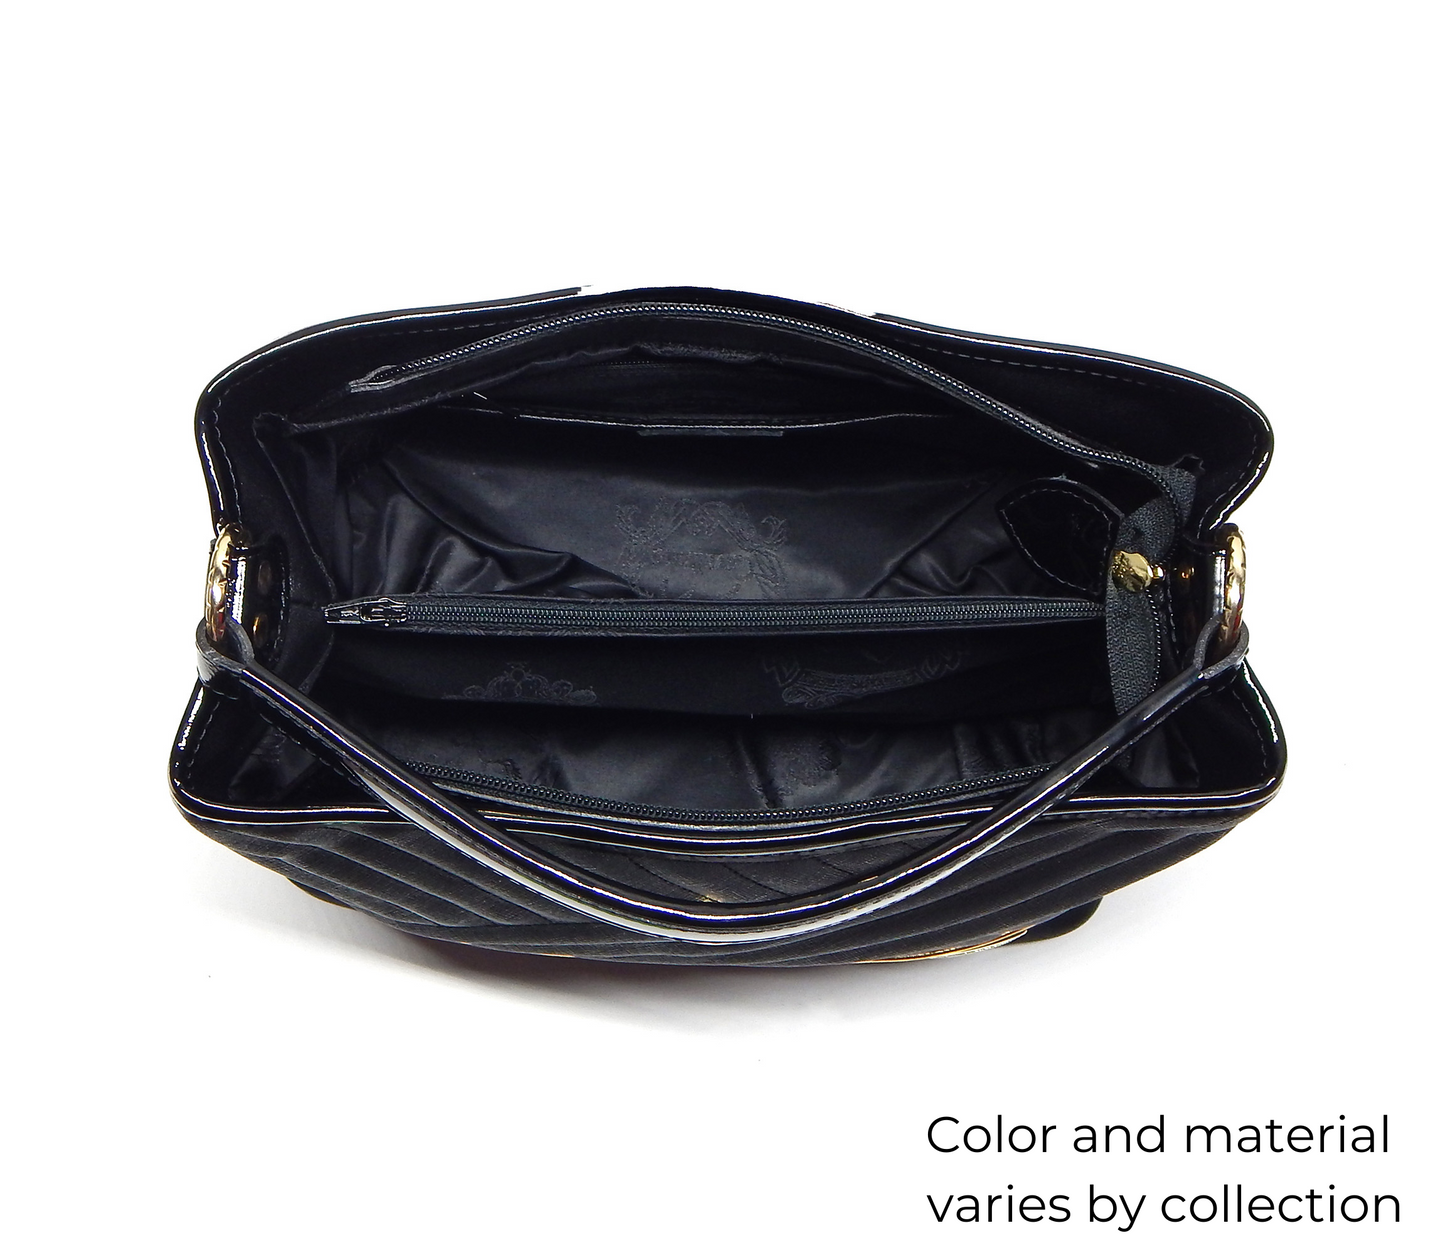 #color_ Black | Cavalinho Honor Handbag - Black - inside_0272_a5d211bc-2146-4168-a868-c32edc49621a